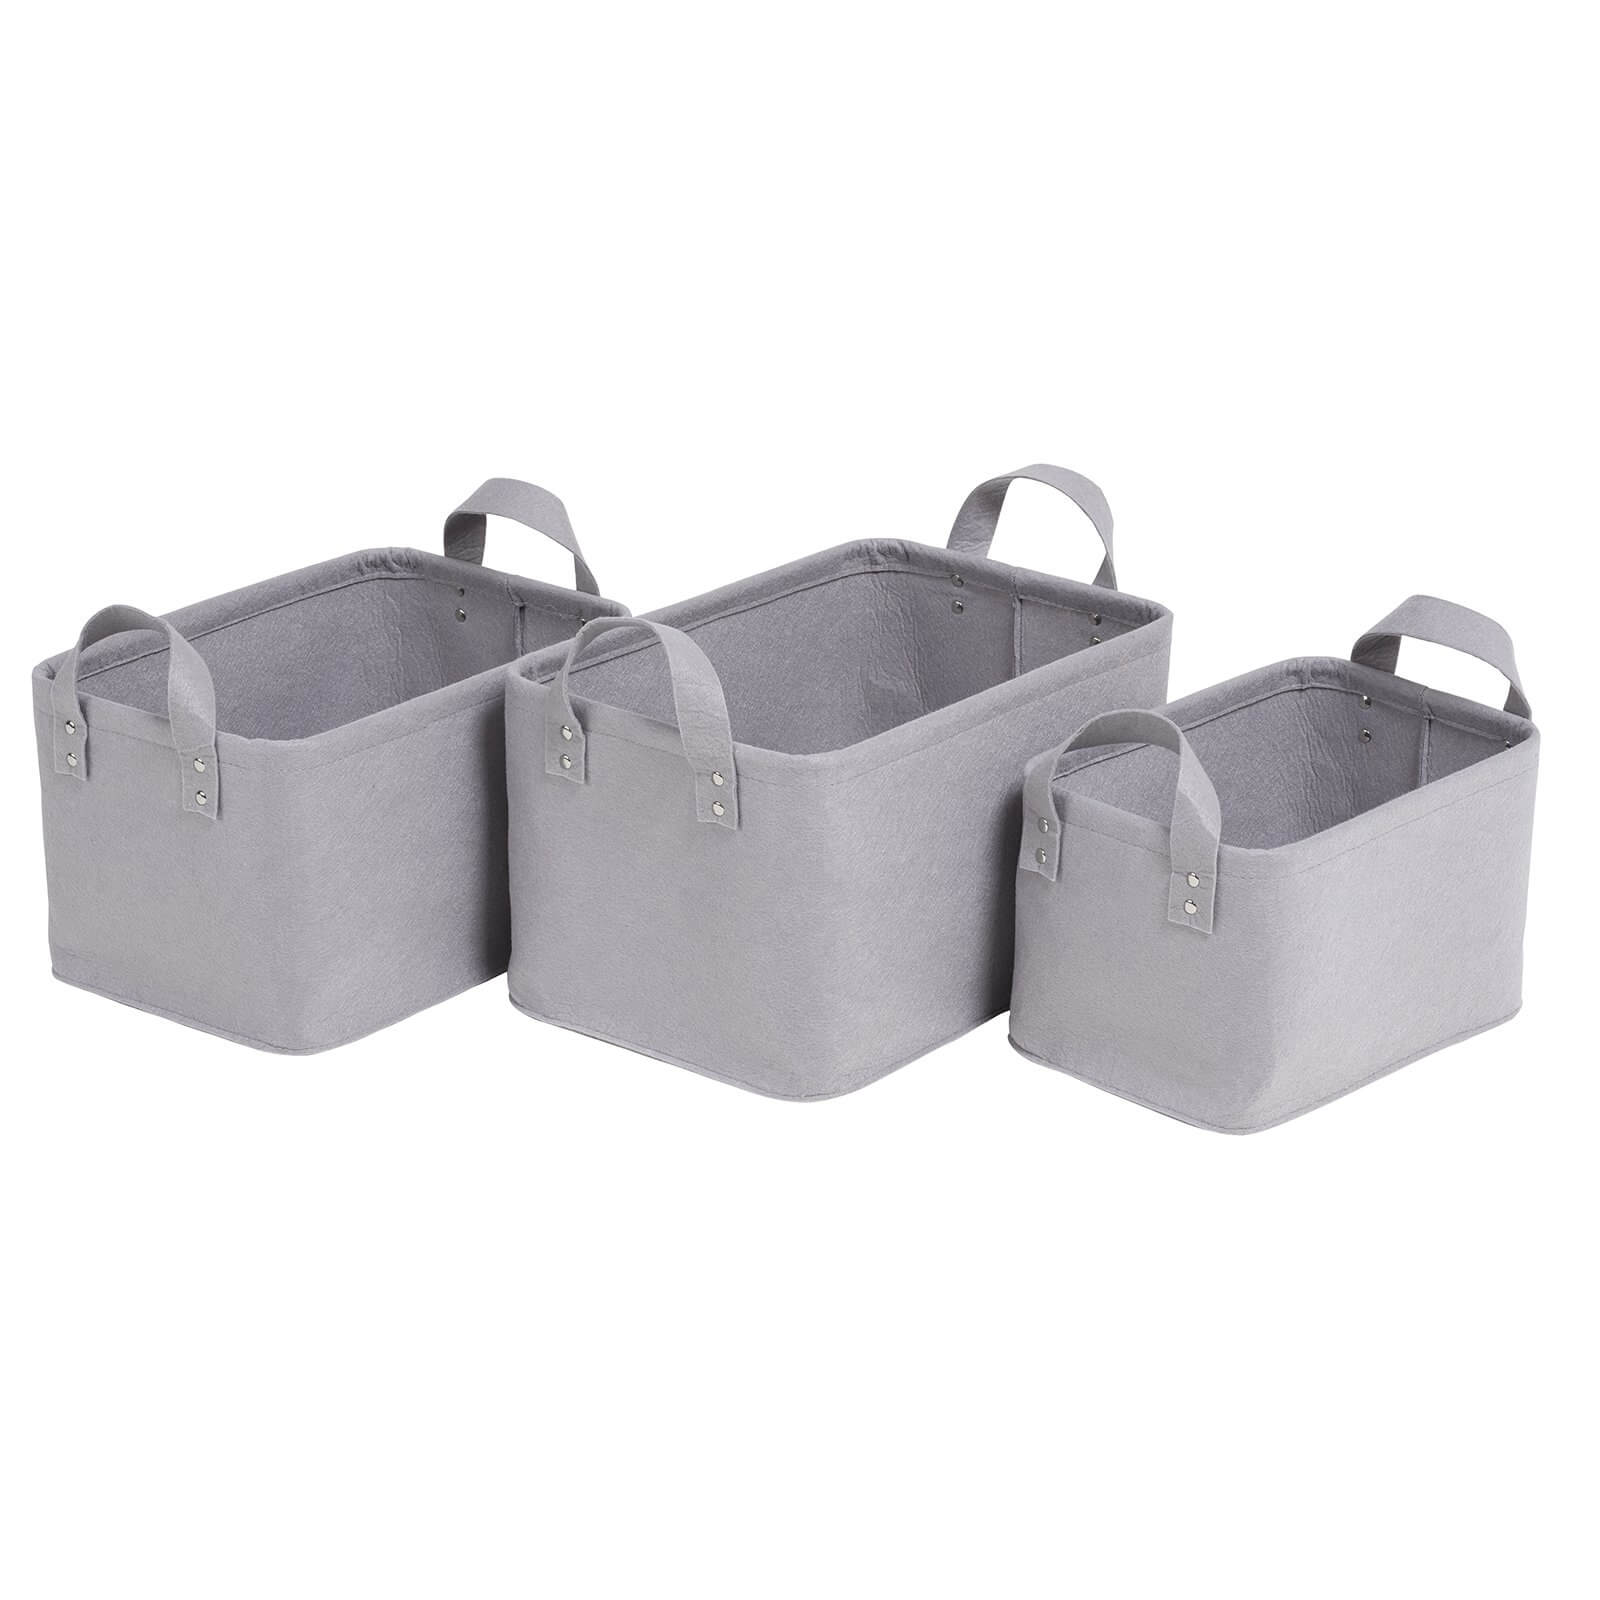 Felt Basket 3 Pack - Grey